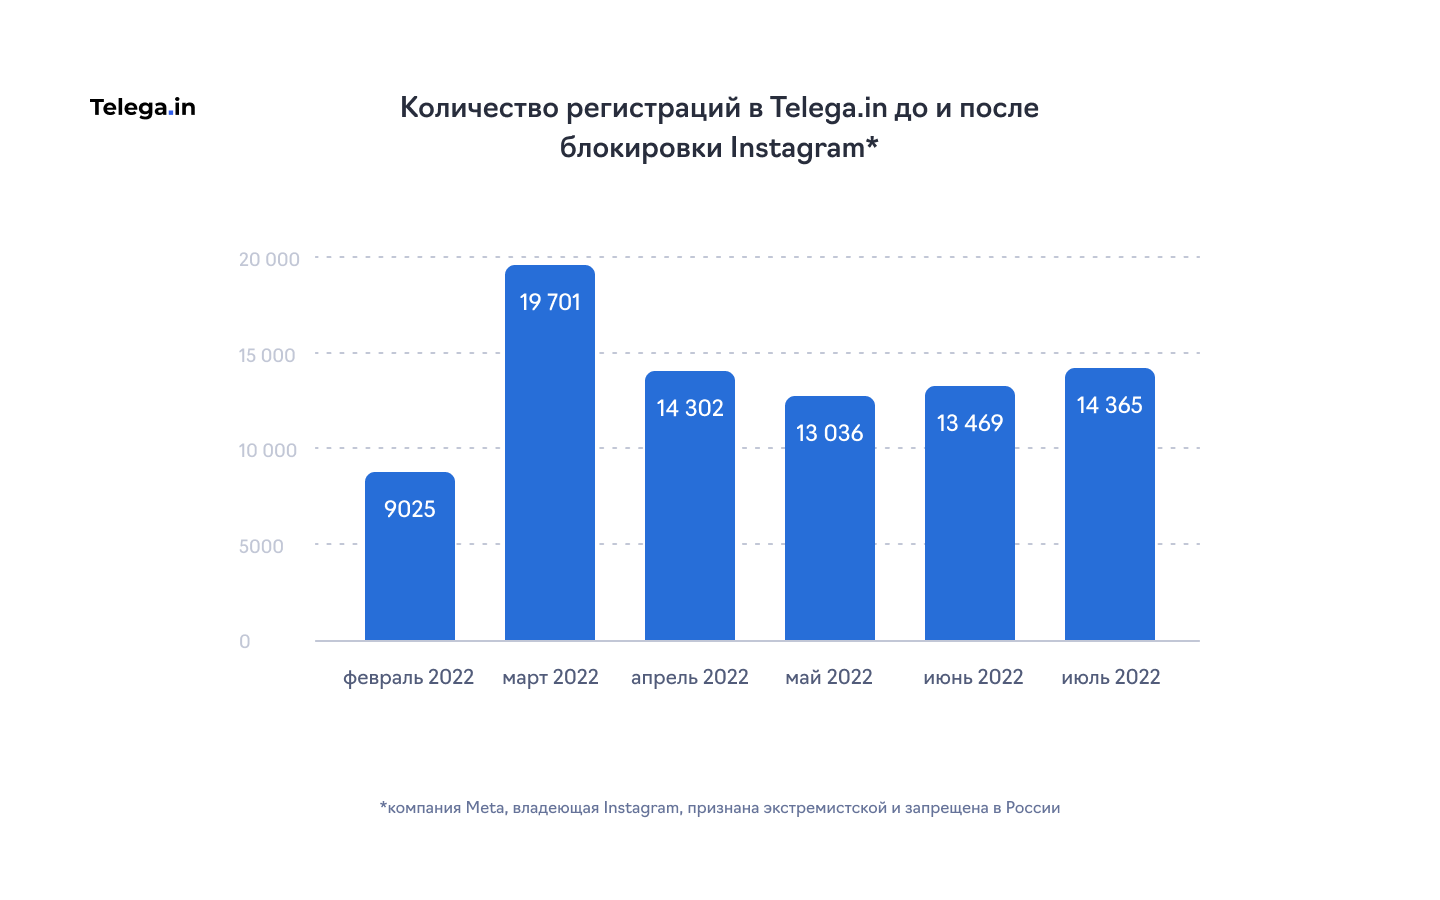 Количество регистраций в сервисе Telega.in в 2022 году